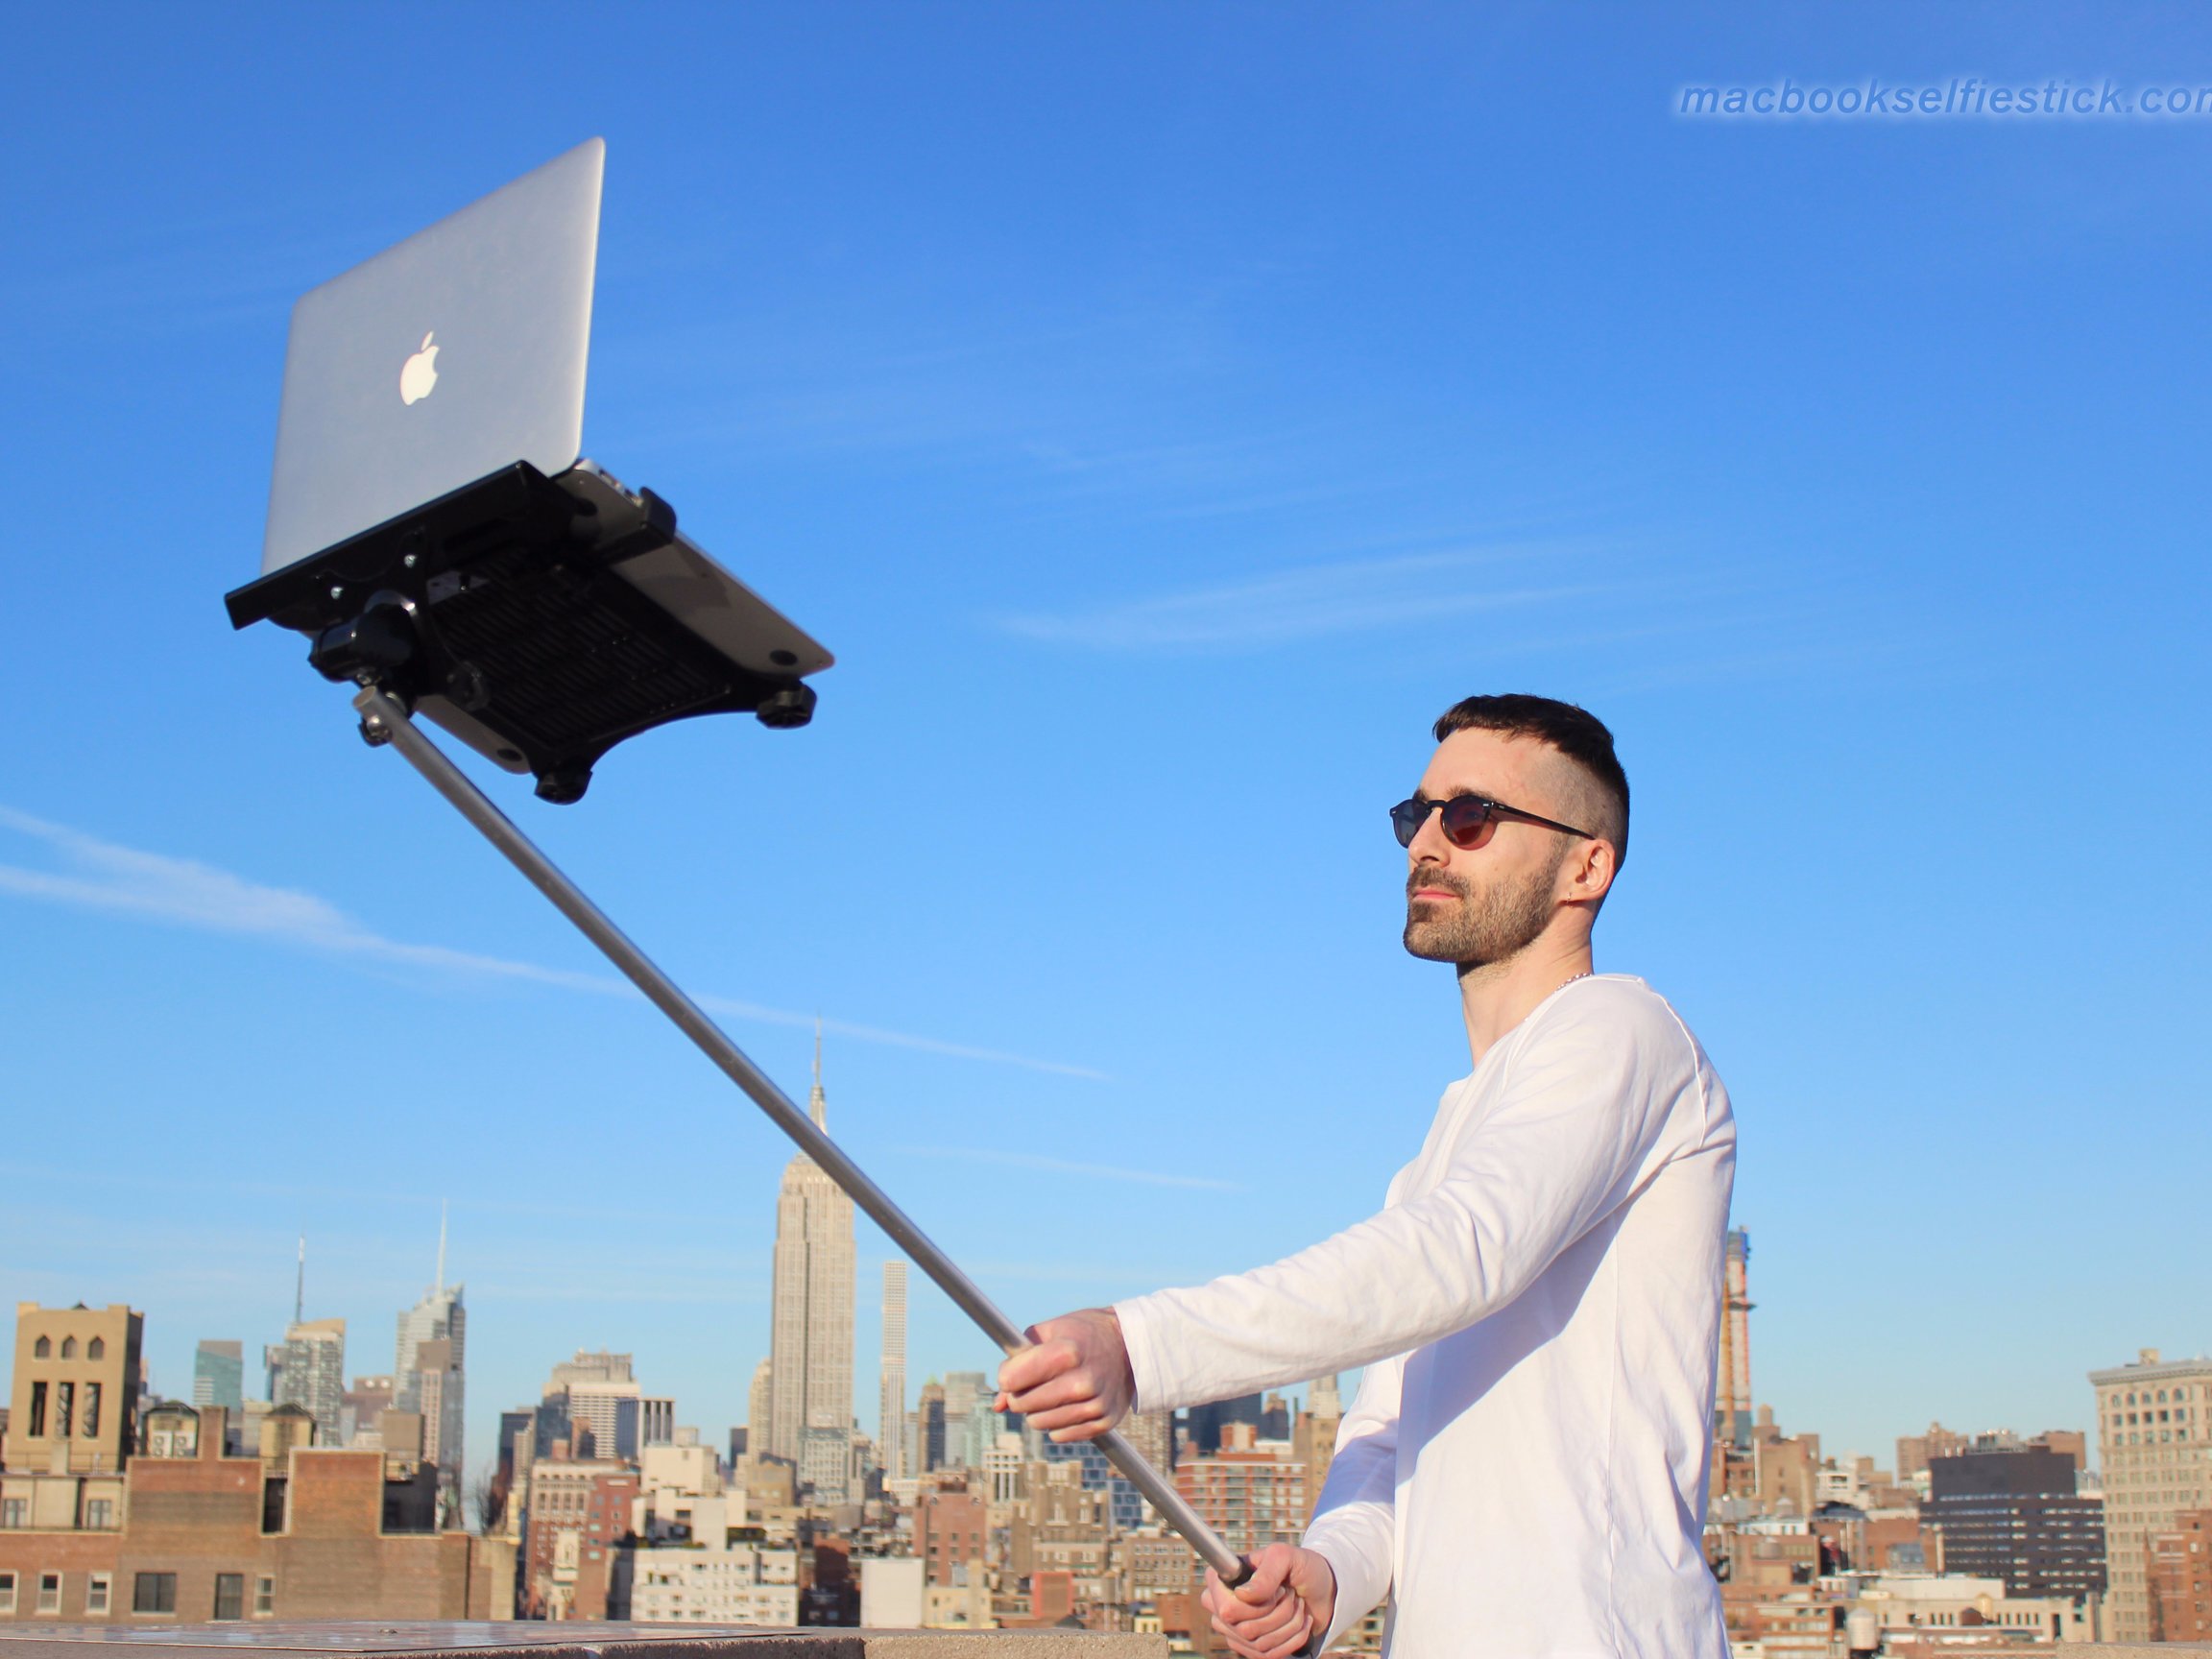 Macbook Selfie Stick Is the Tech Trend